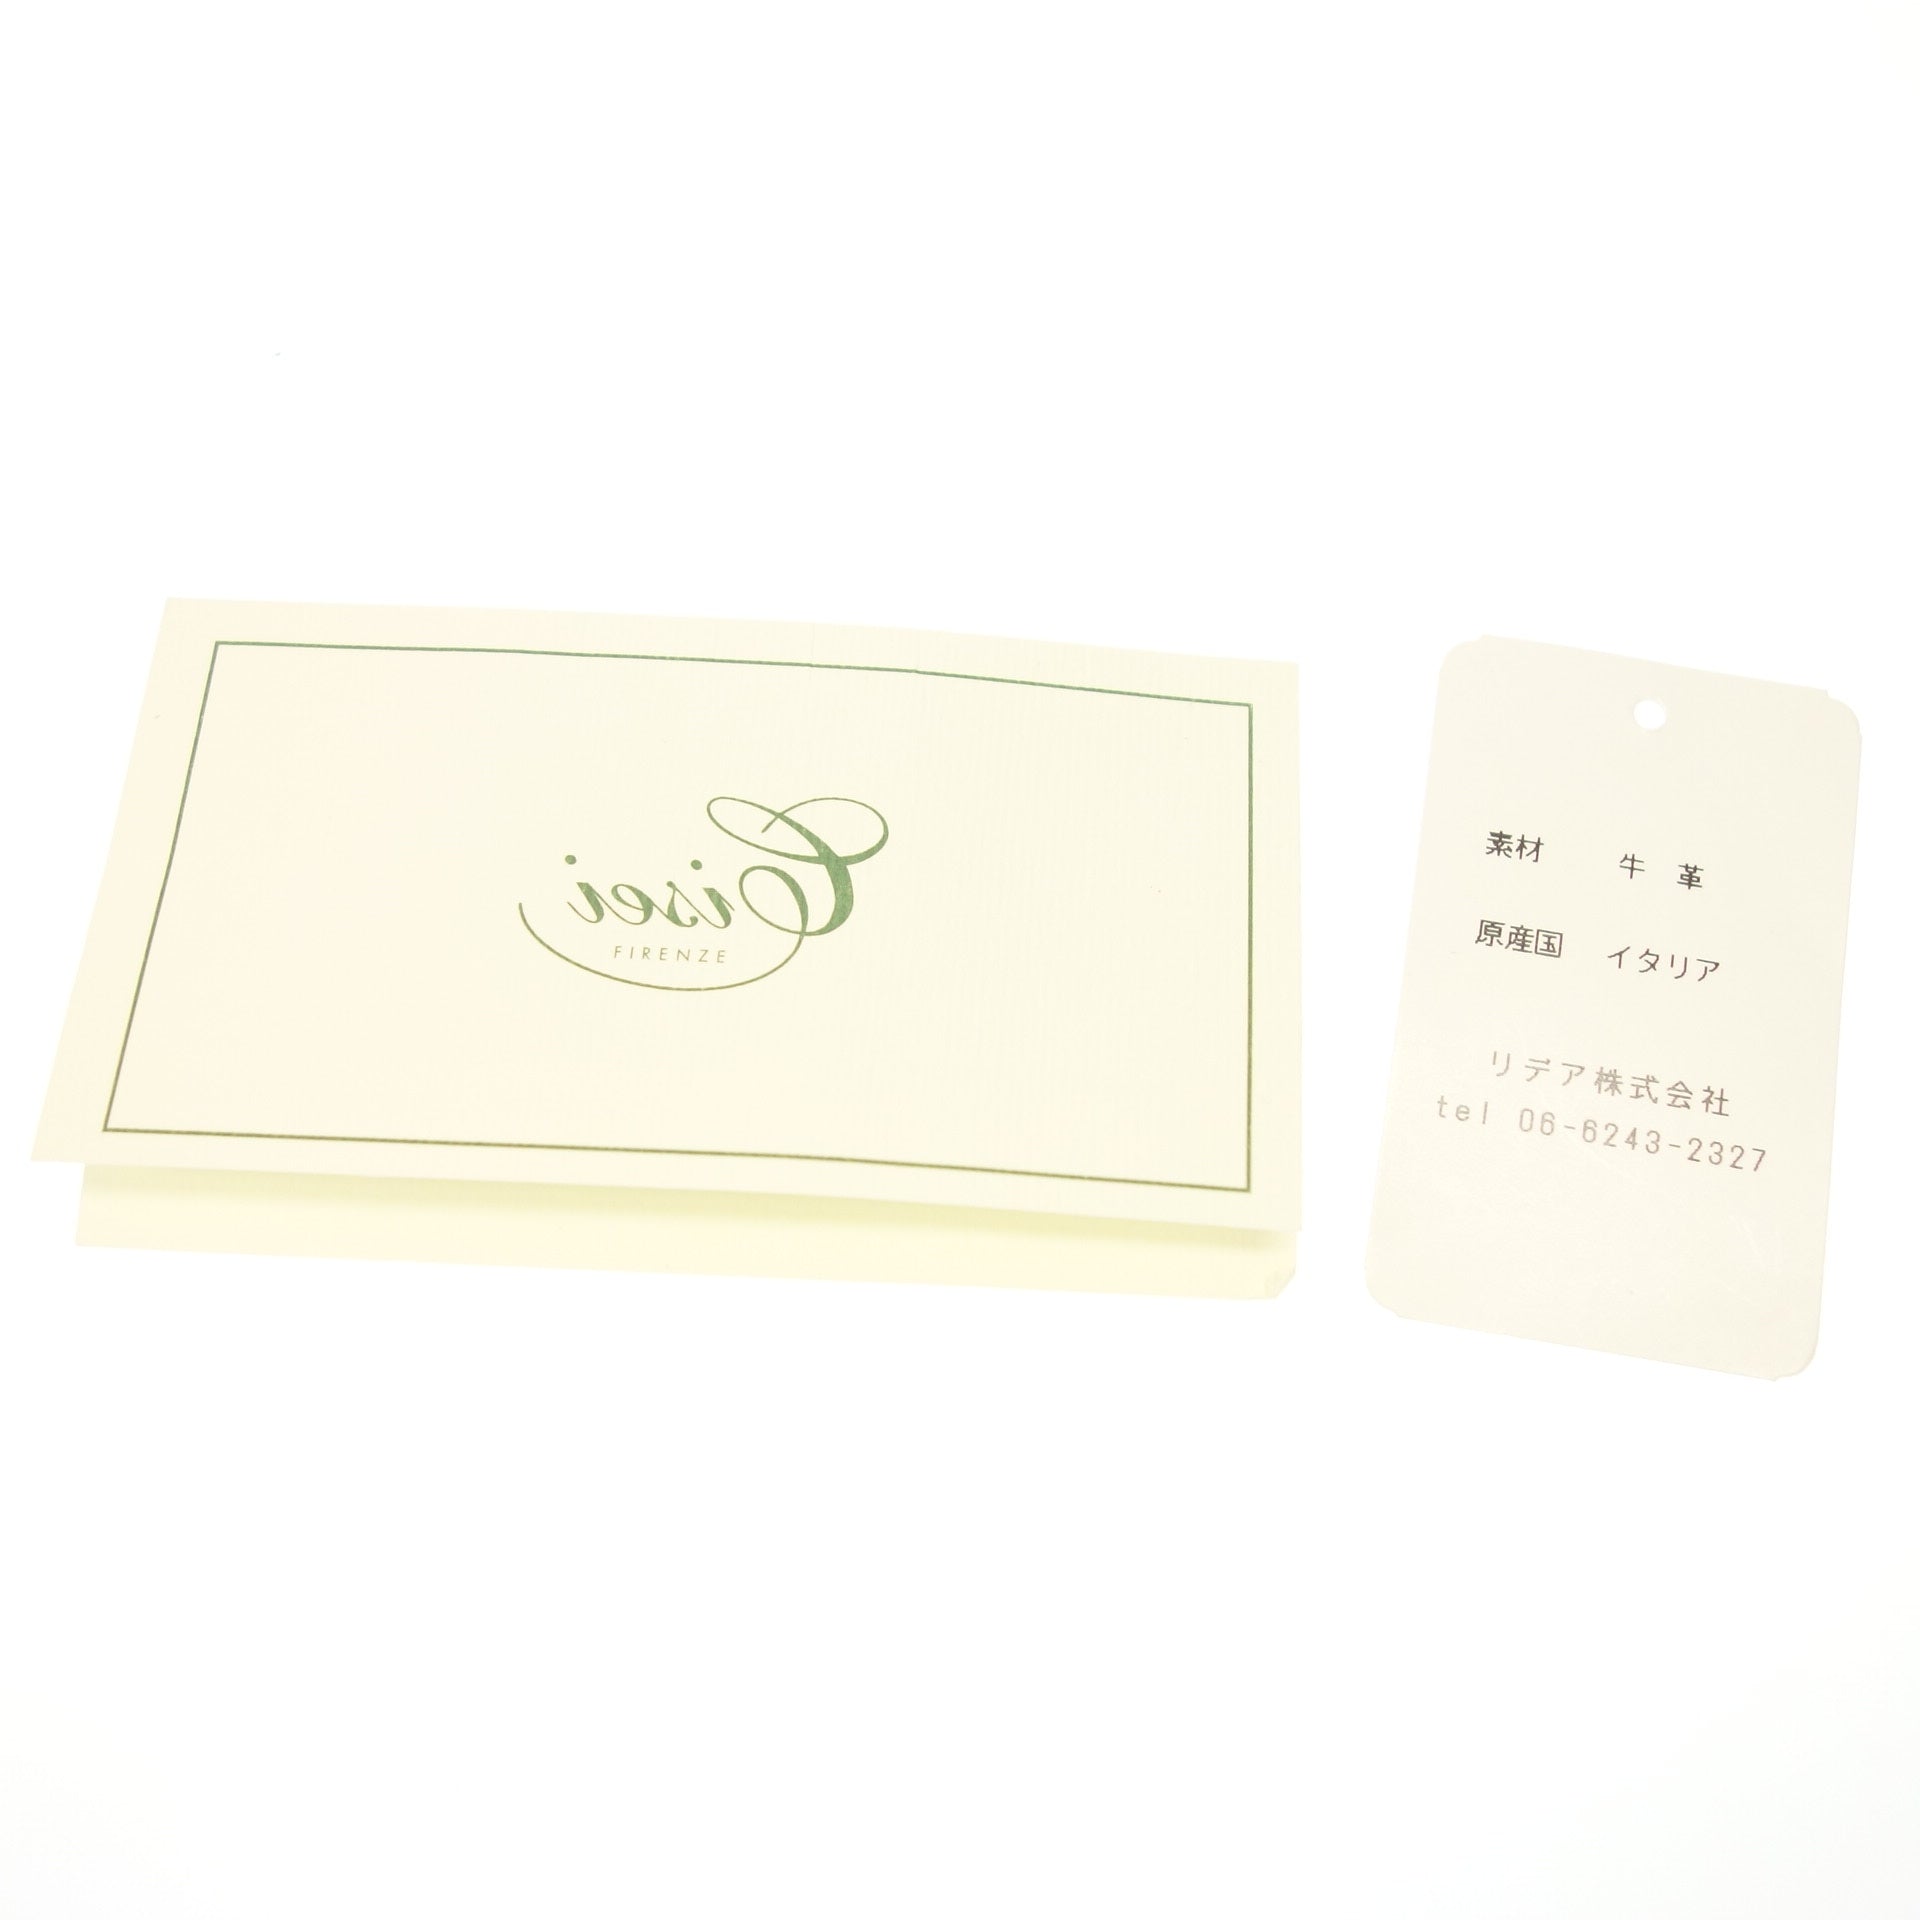 シセイ ショルダーバッグ レザー 2way 茶 CISEI【AFE12】【中古】